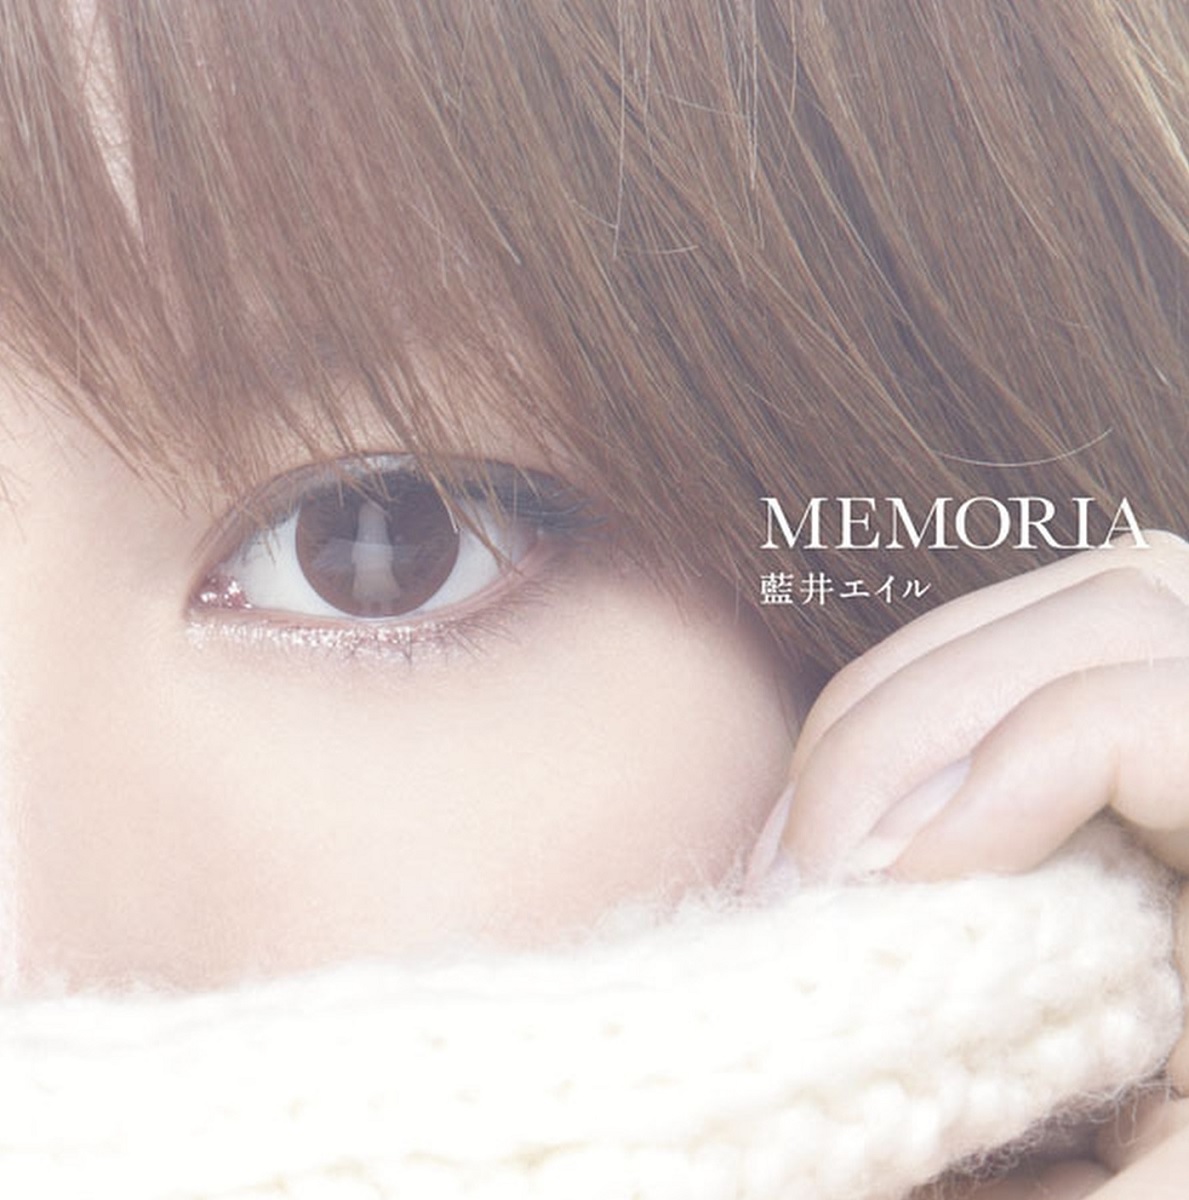 Cover art for『Eir Aoi - MEMORIA』from the release『MEMORIA』